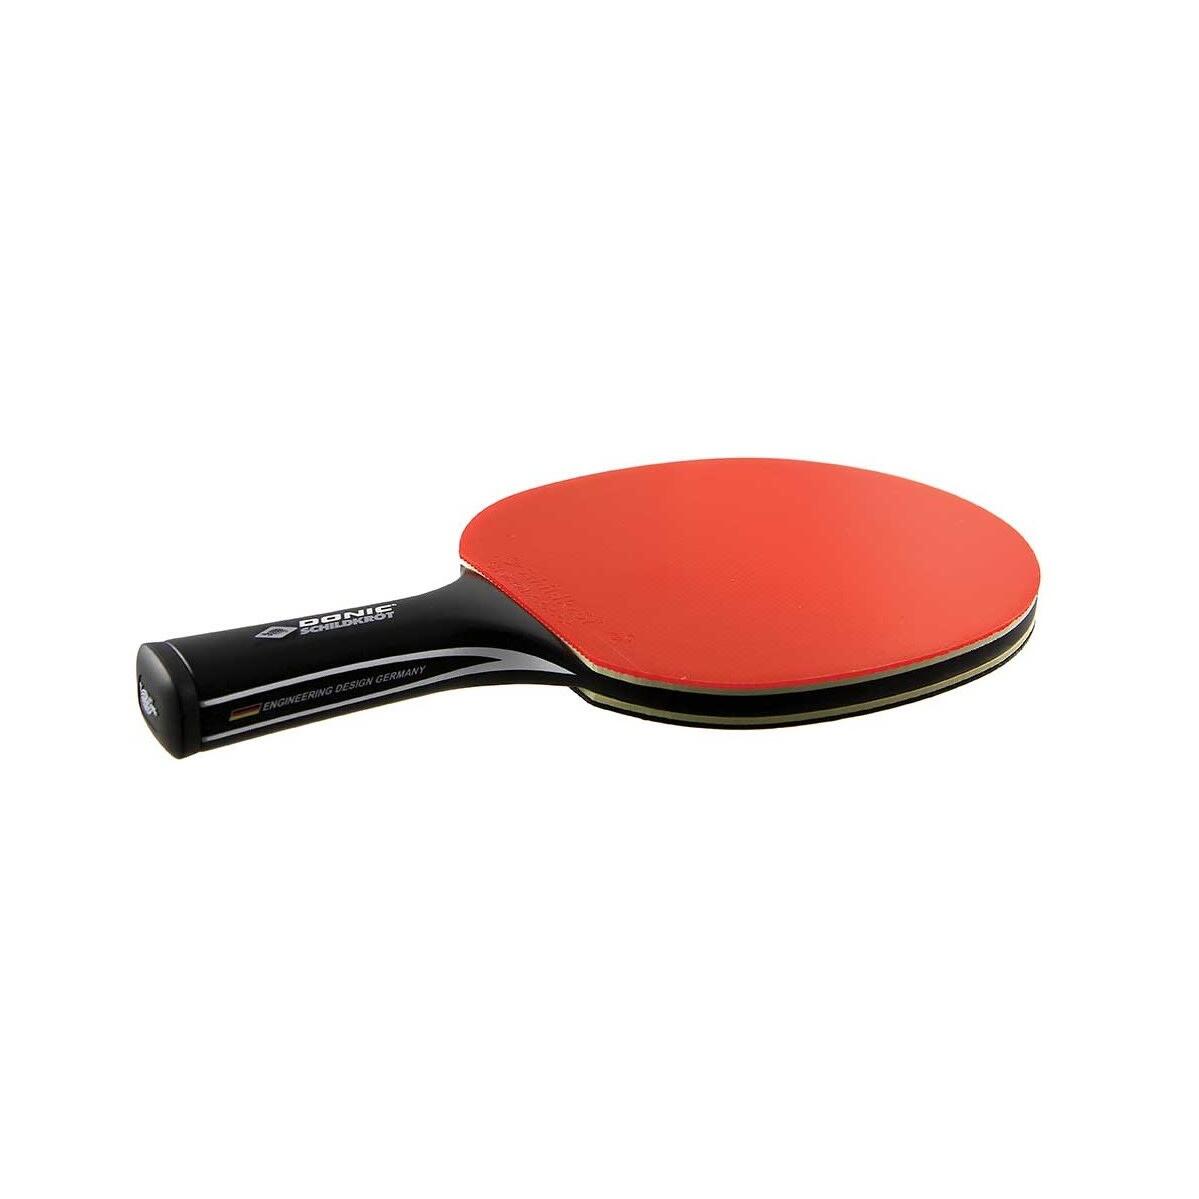 CarboTec 900 Table Tennis Bat (Black) 2/3